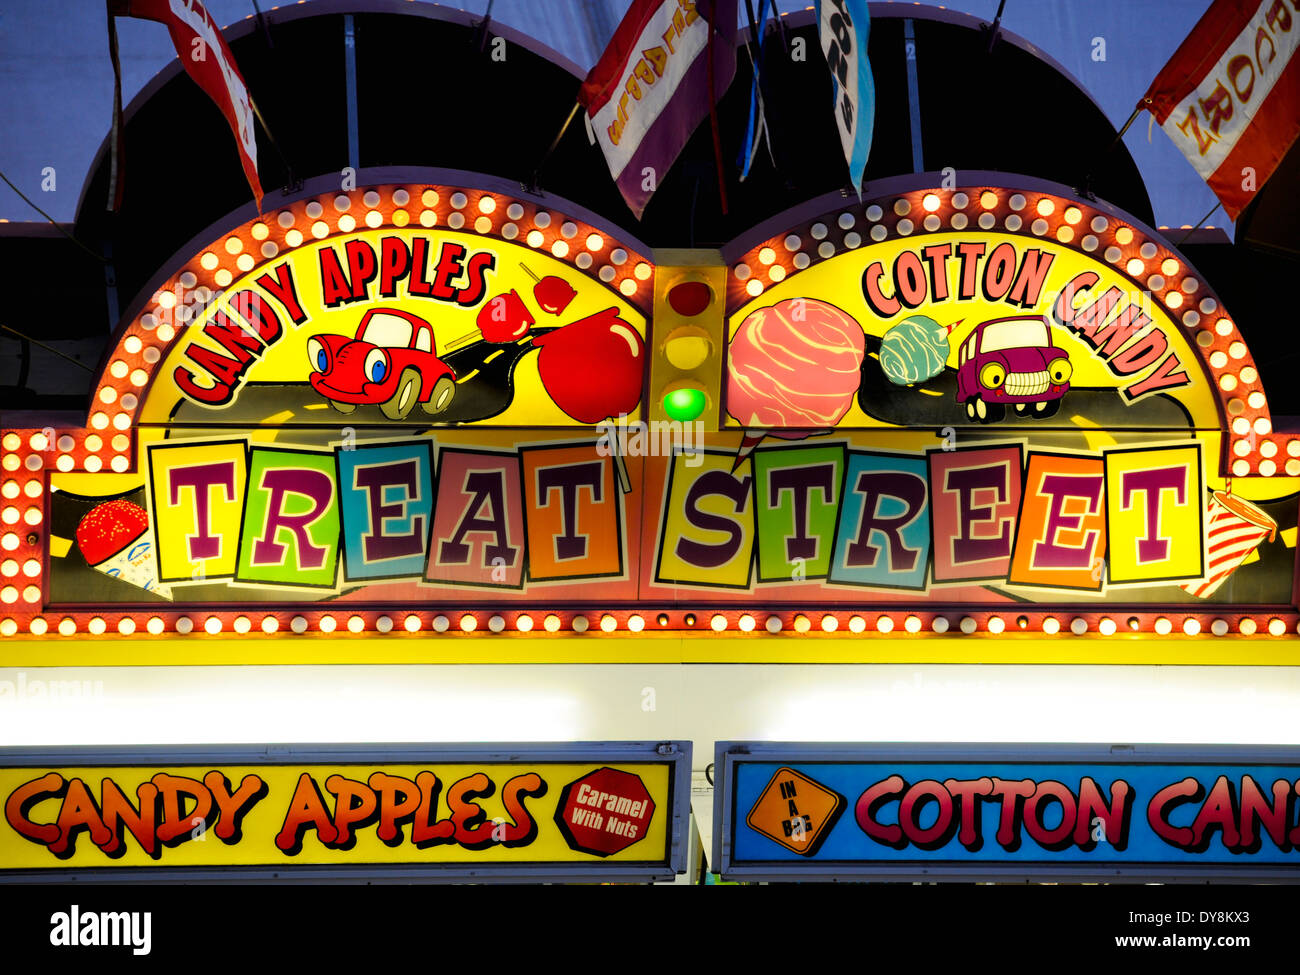 Eine Leuchtreklame für "Treat Street" ein Karneval / Messe / Festival Süßigkeiten und Leckereien Anbieter Stockfoto